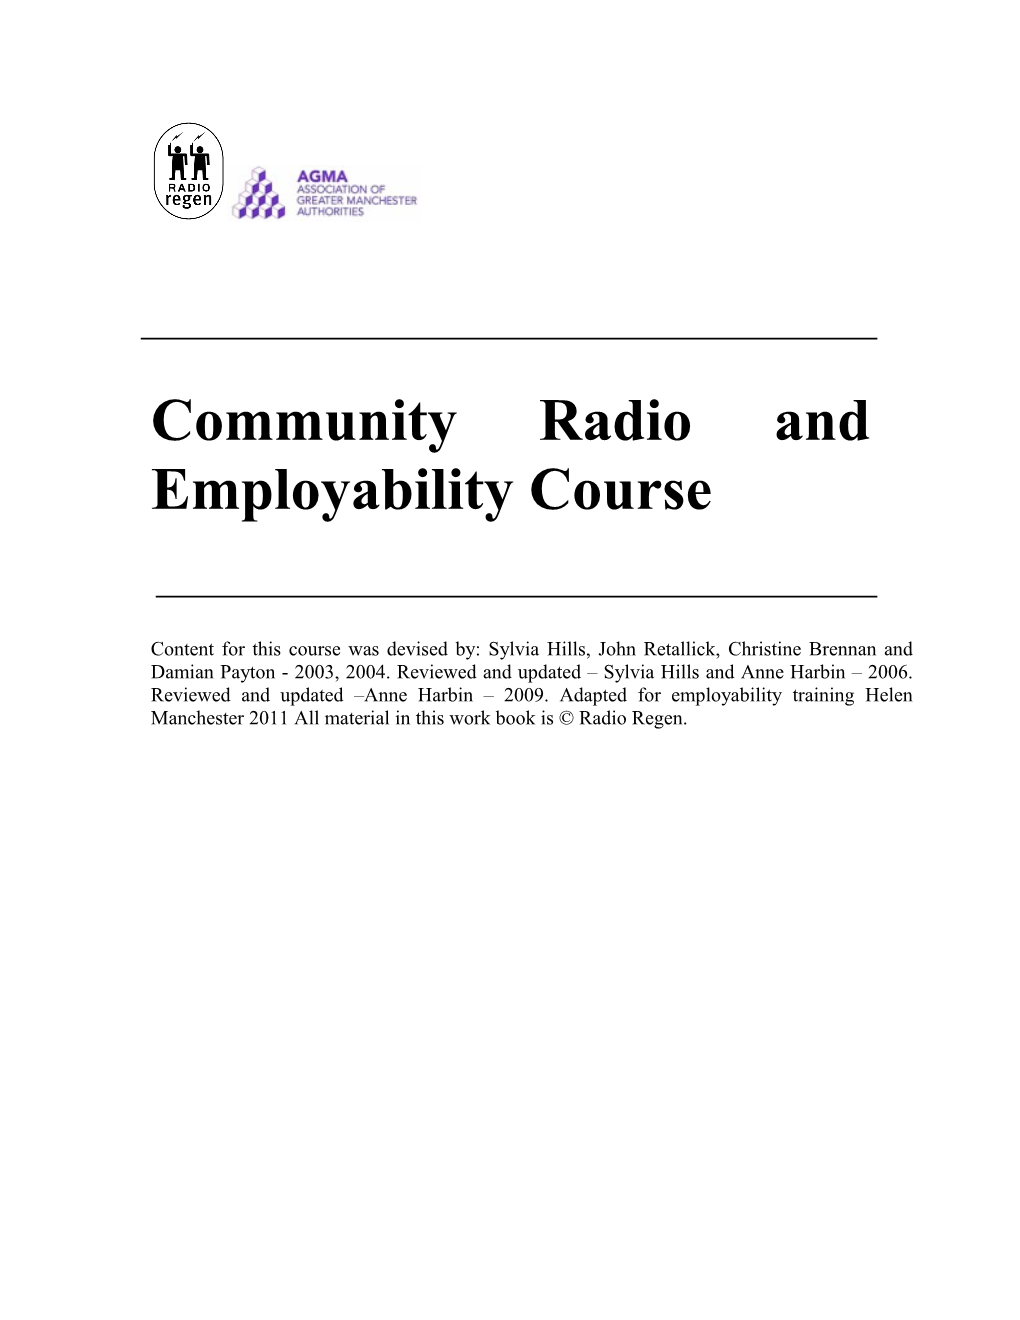 Community Radio and Employability Course